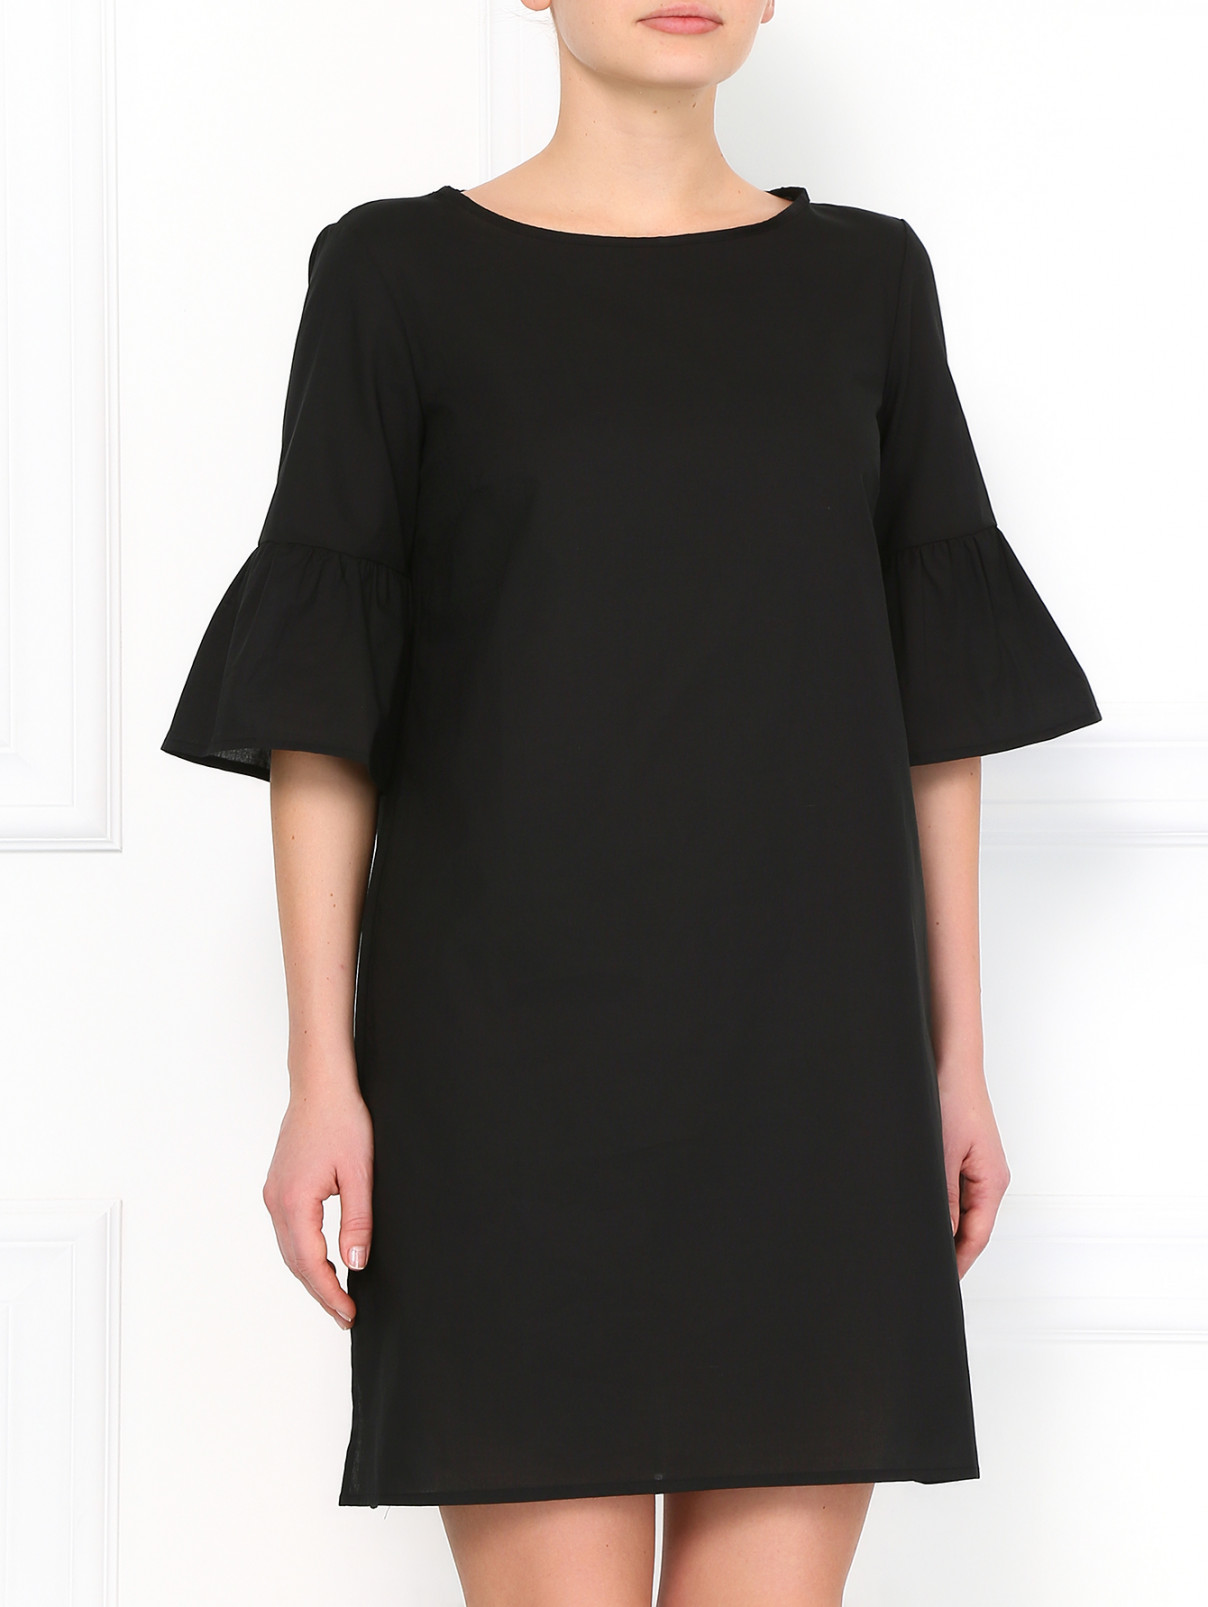 Платье из хлопка Vanda Catucci  –  Модель Верх-Низ  – Цвет:  Черный